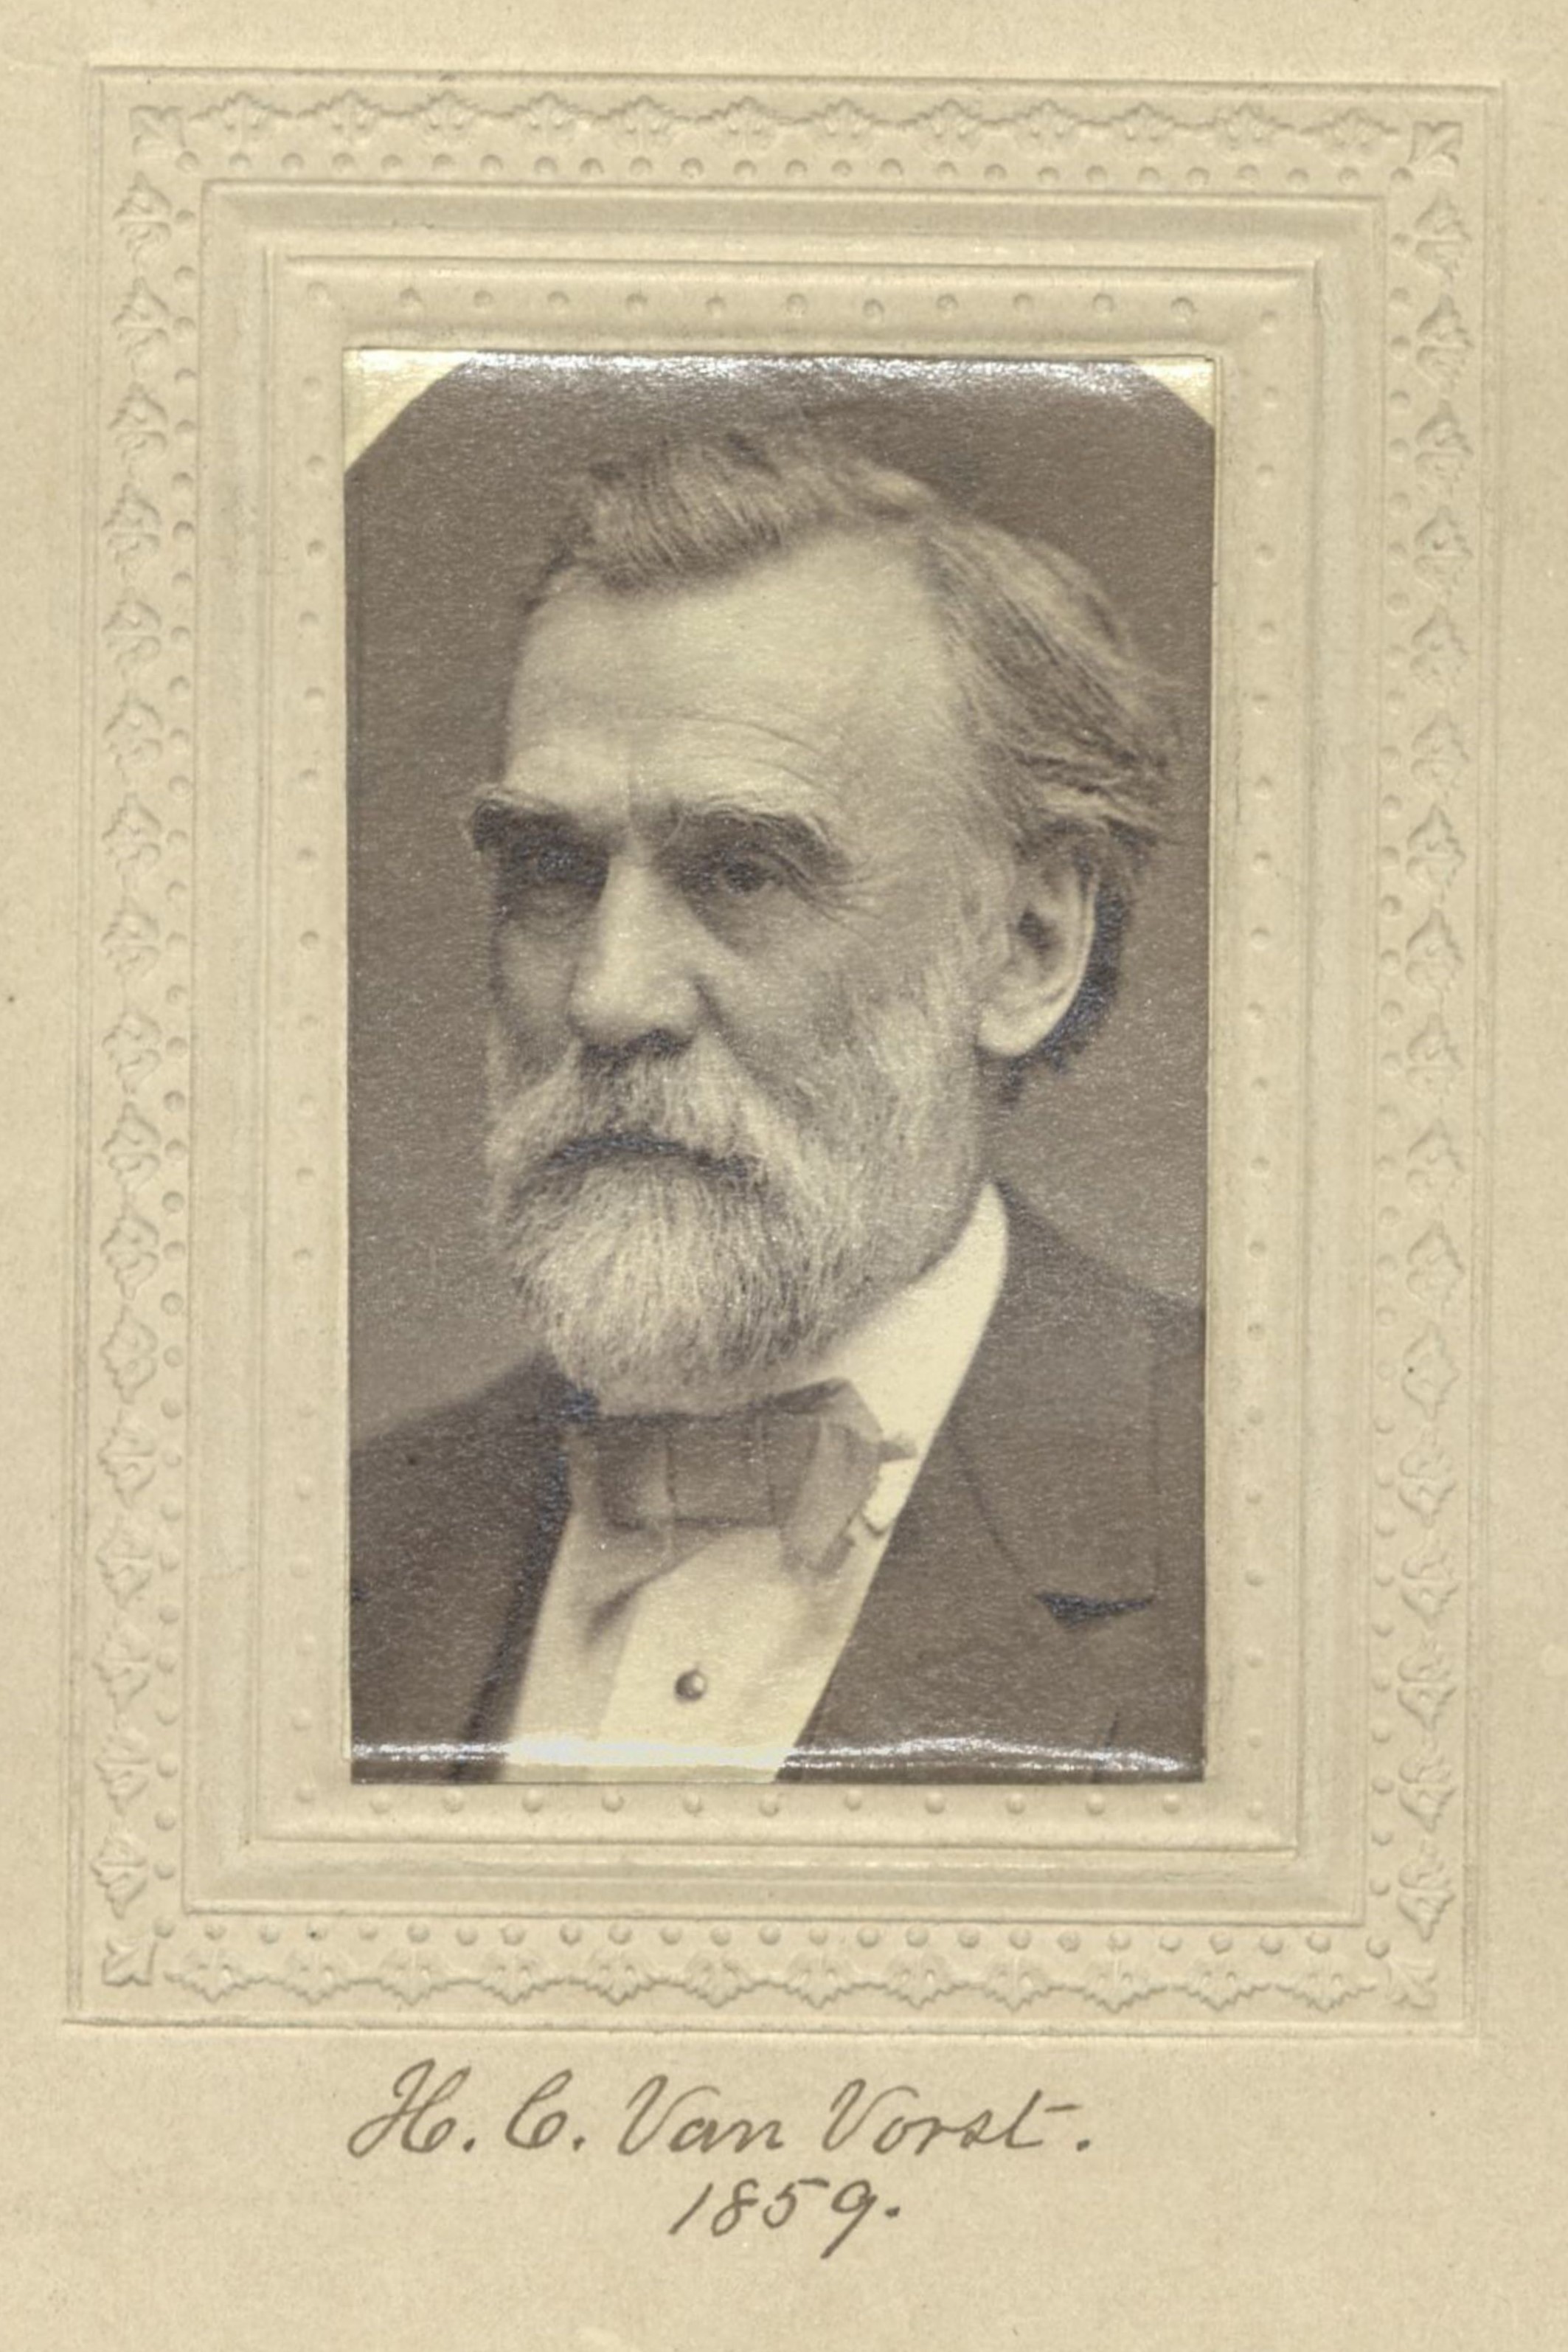 Member portrait of Hooper C. Van Vorst